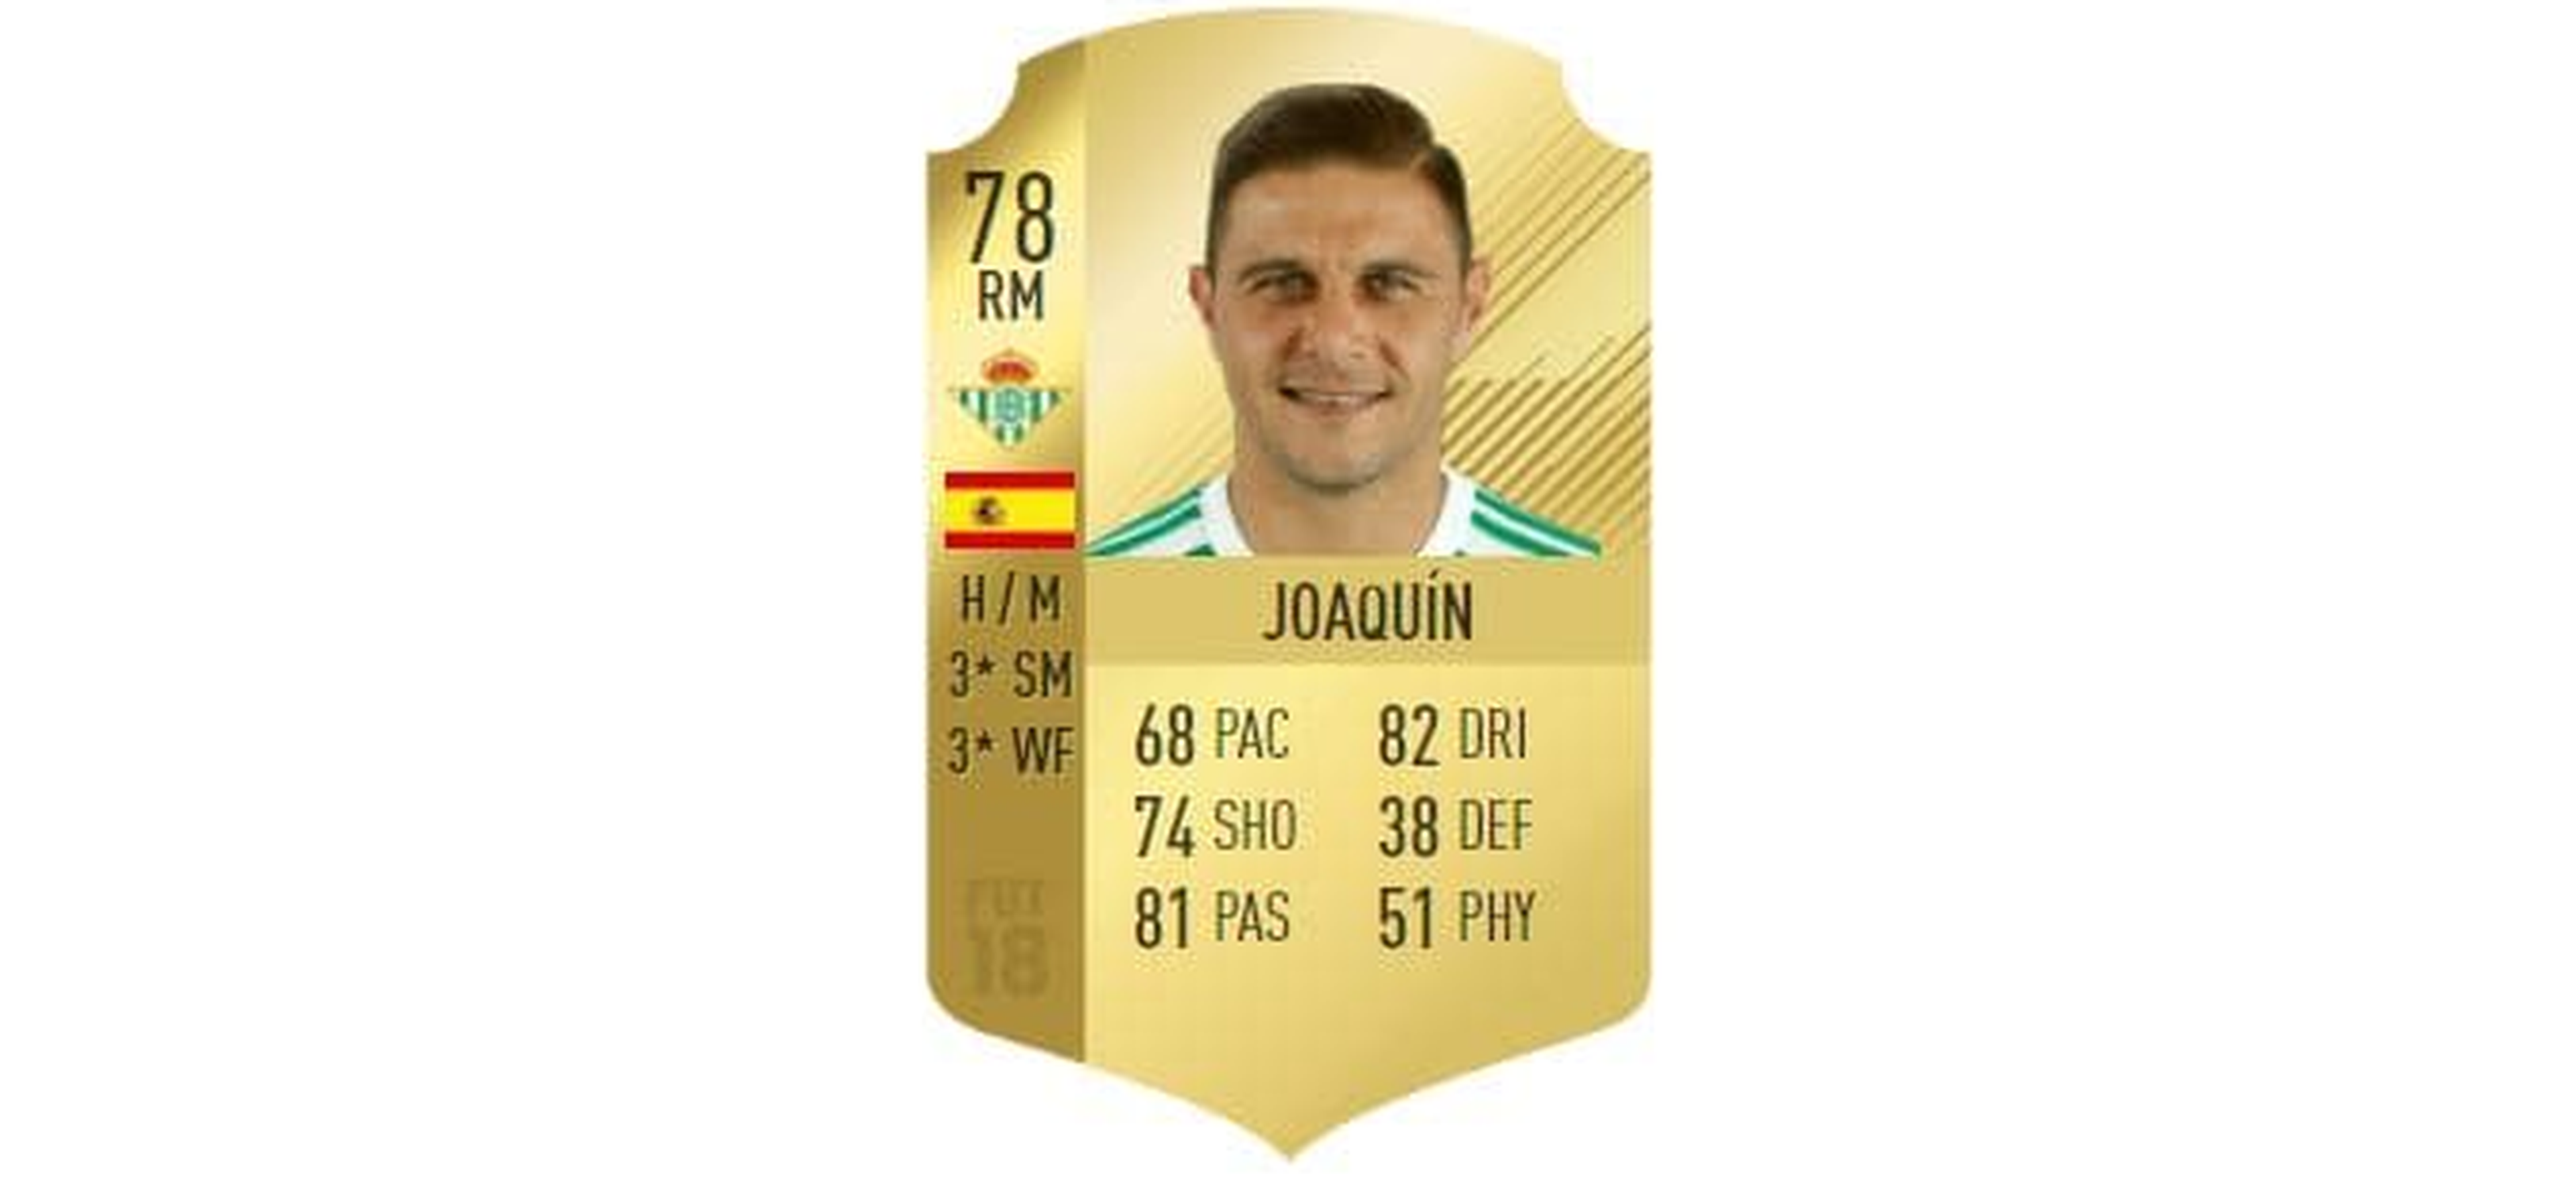 FIFA 18 - Joaquín